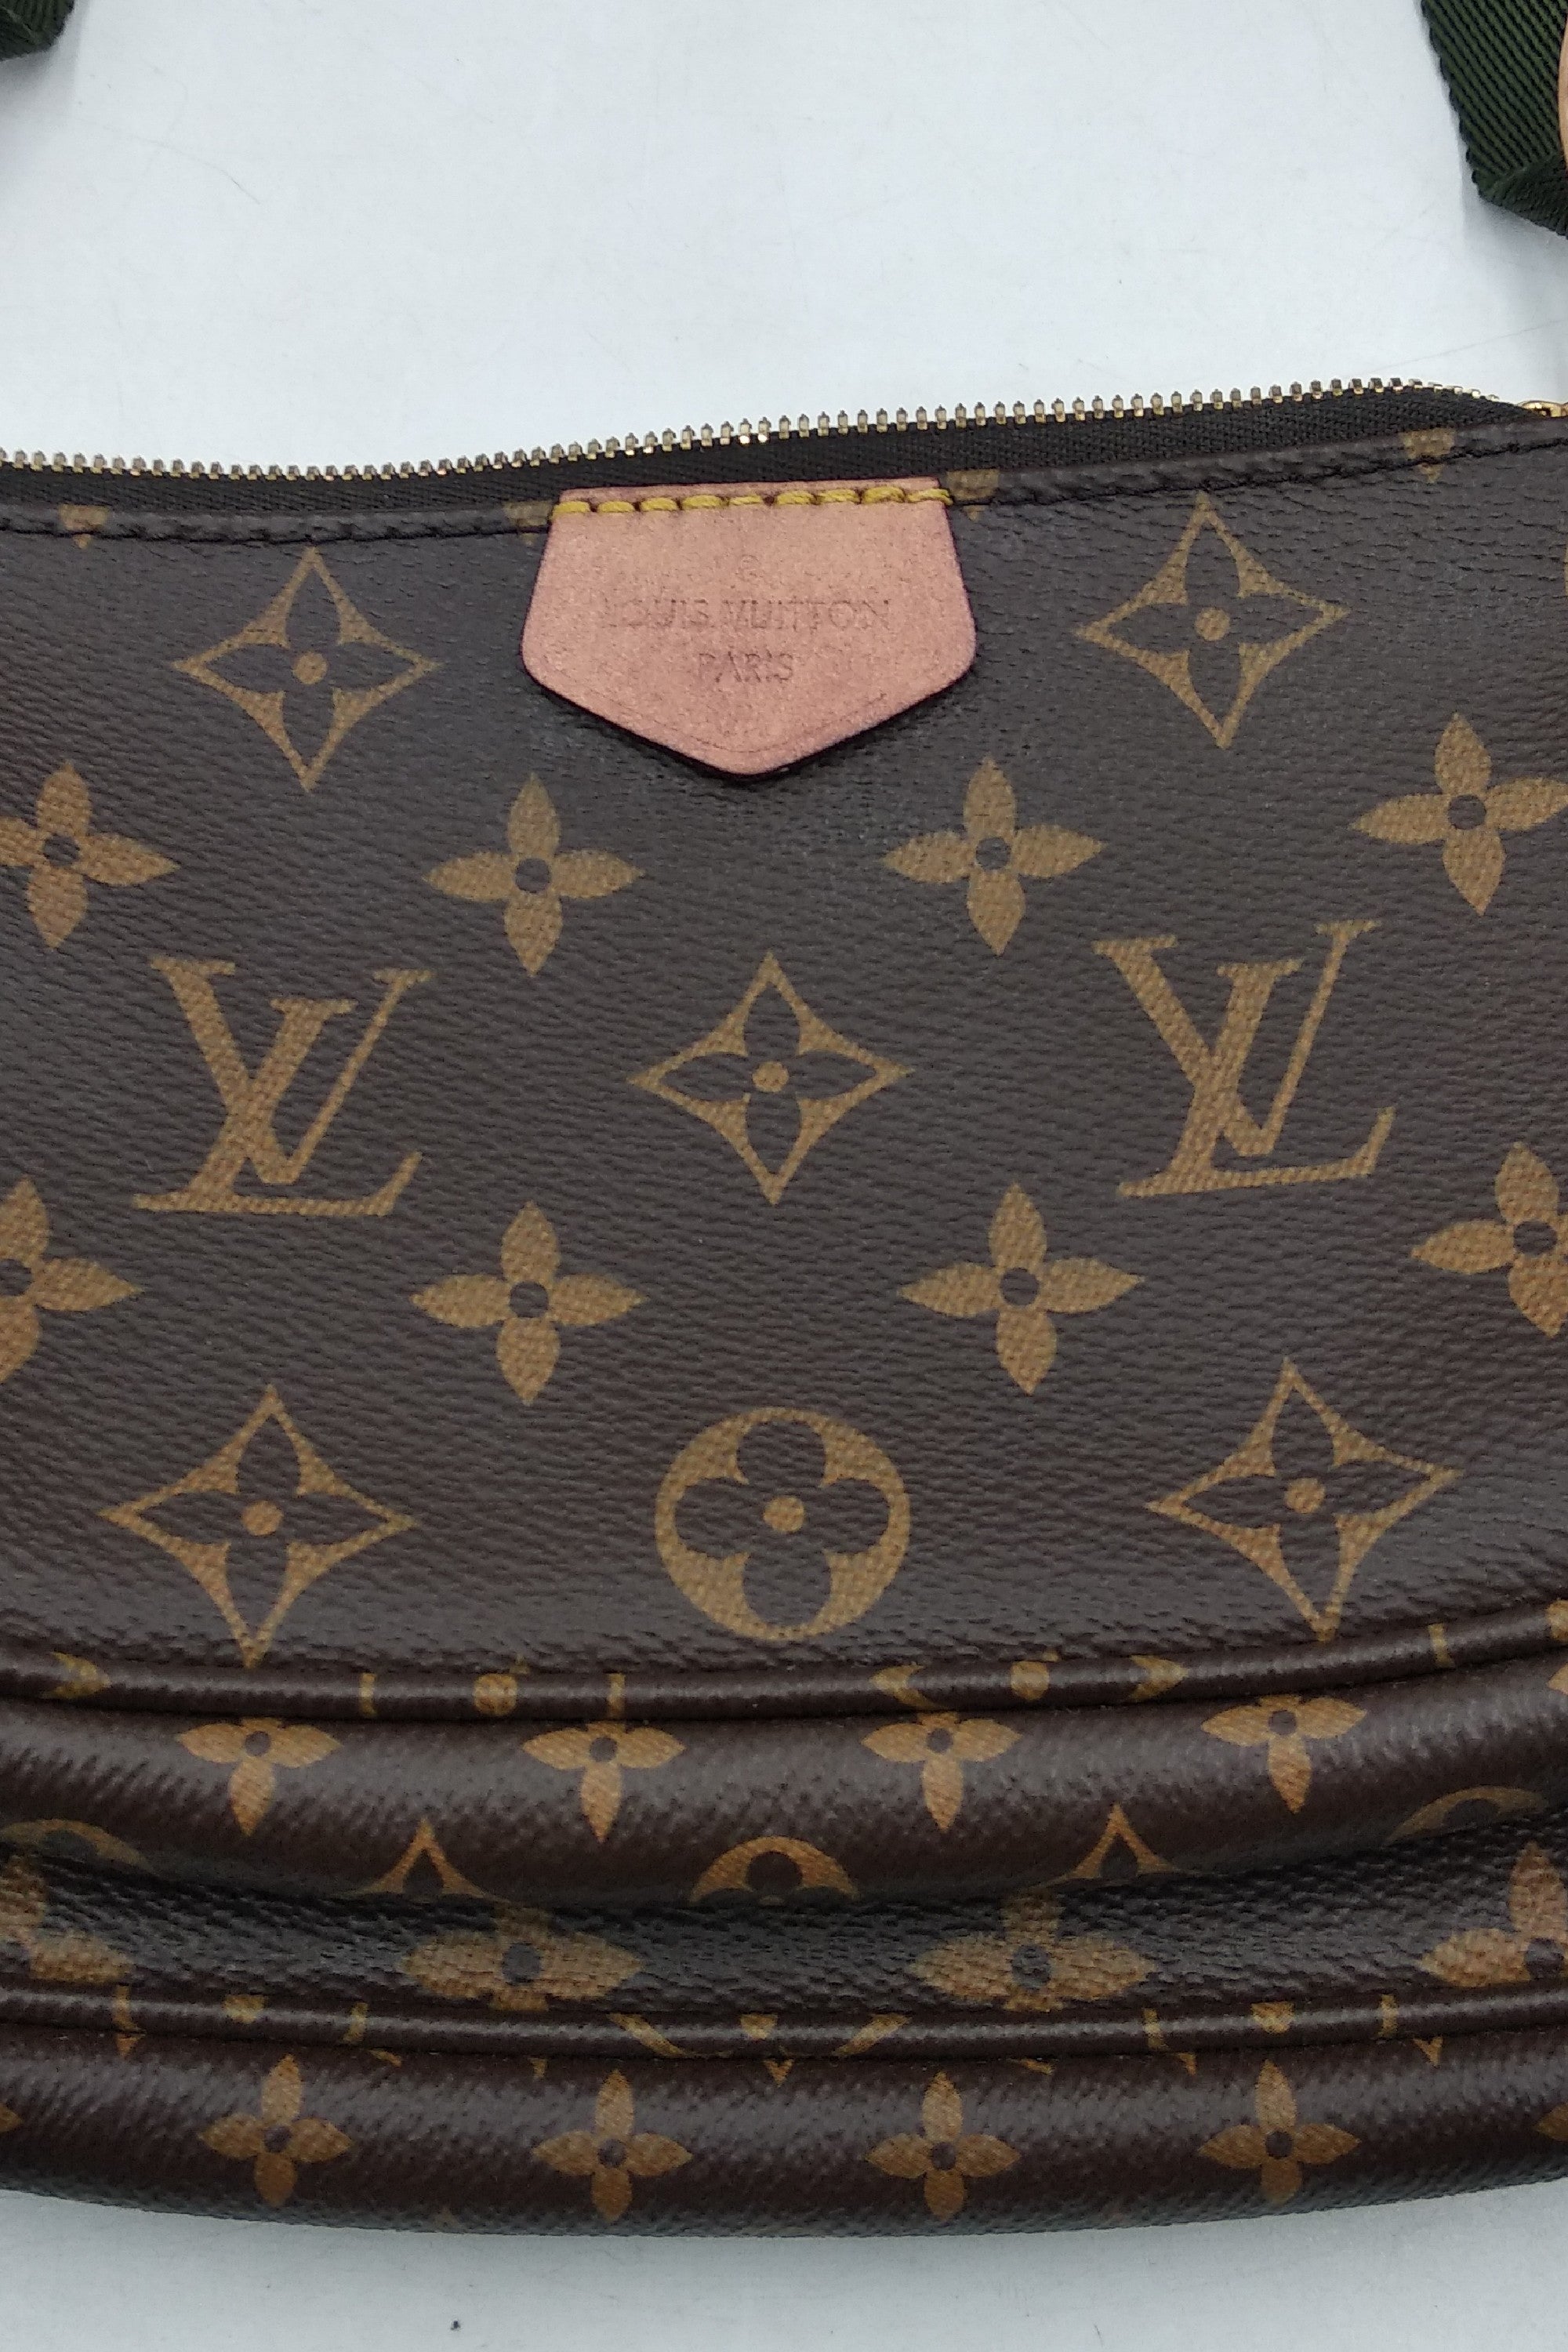 100% Authentic RARE 🦄 Like New Louis Vuitton Multi Pochette